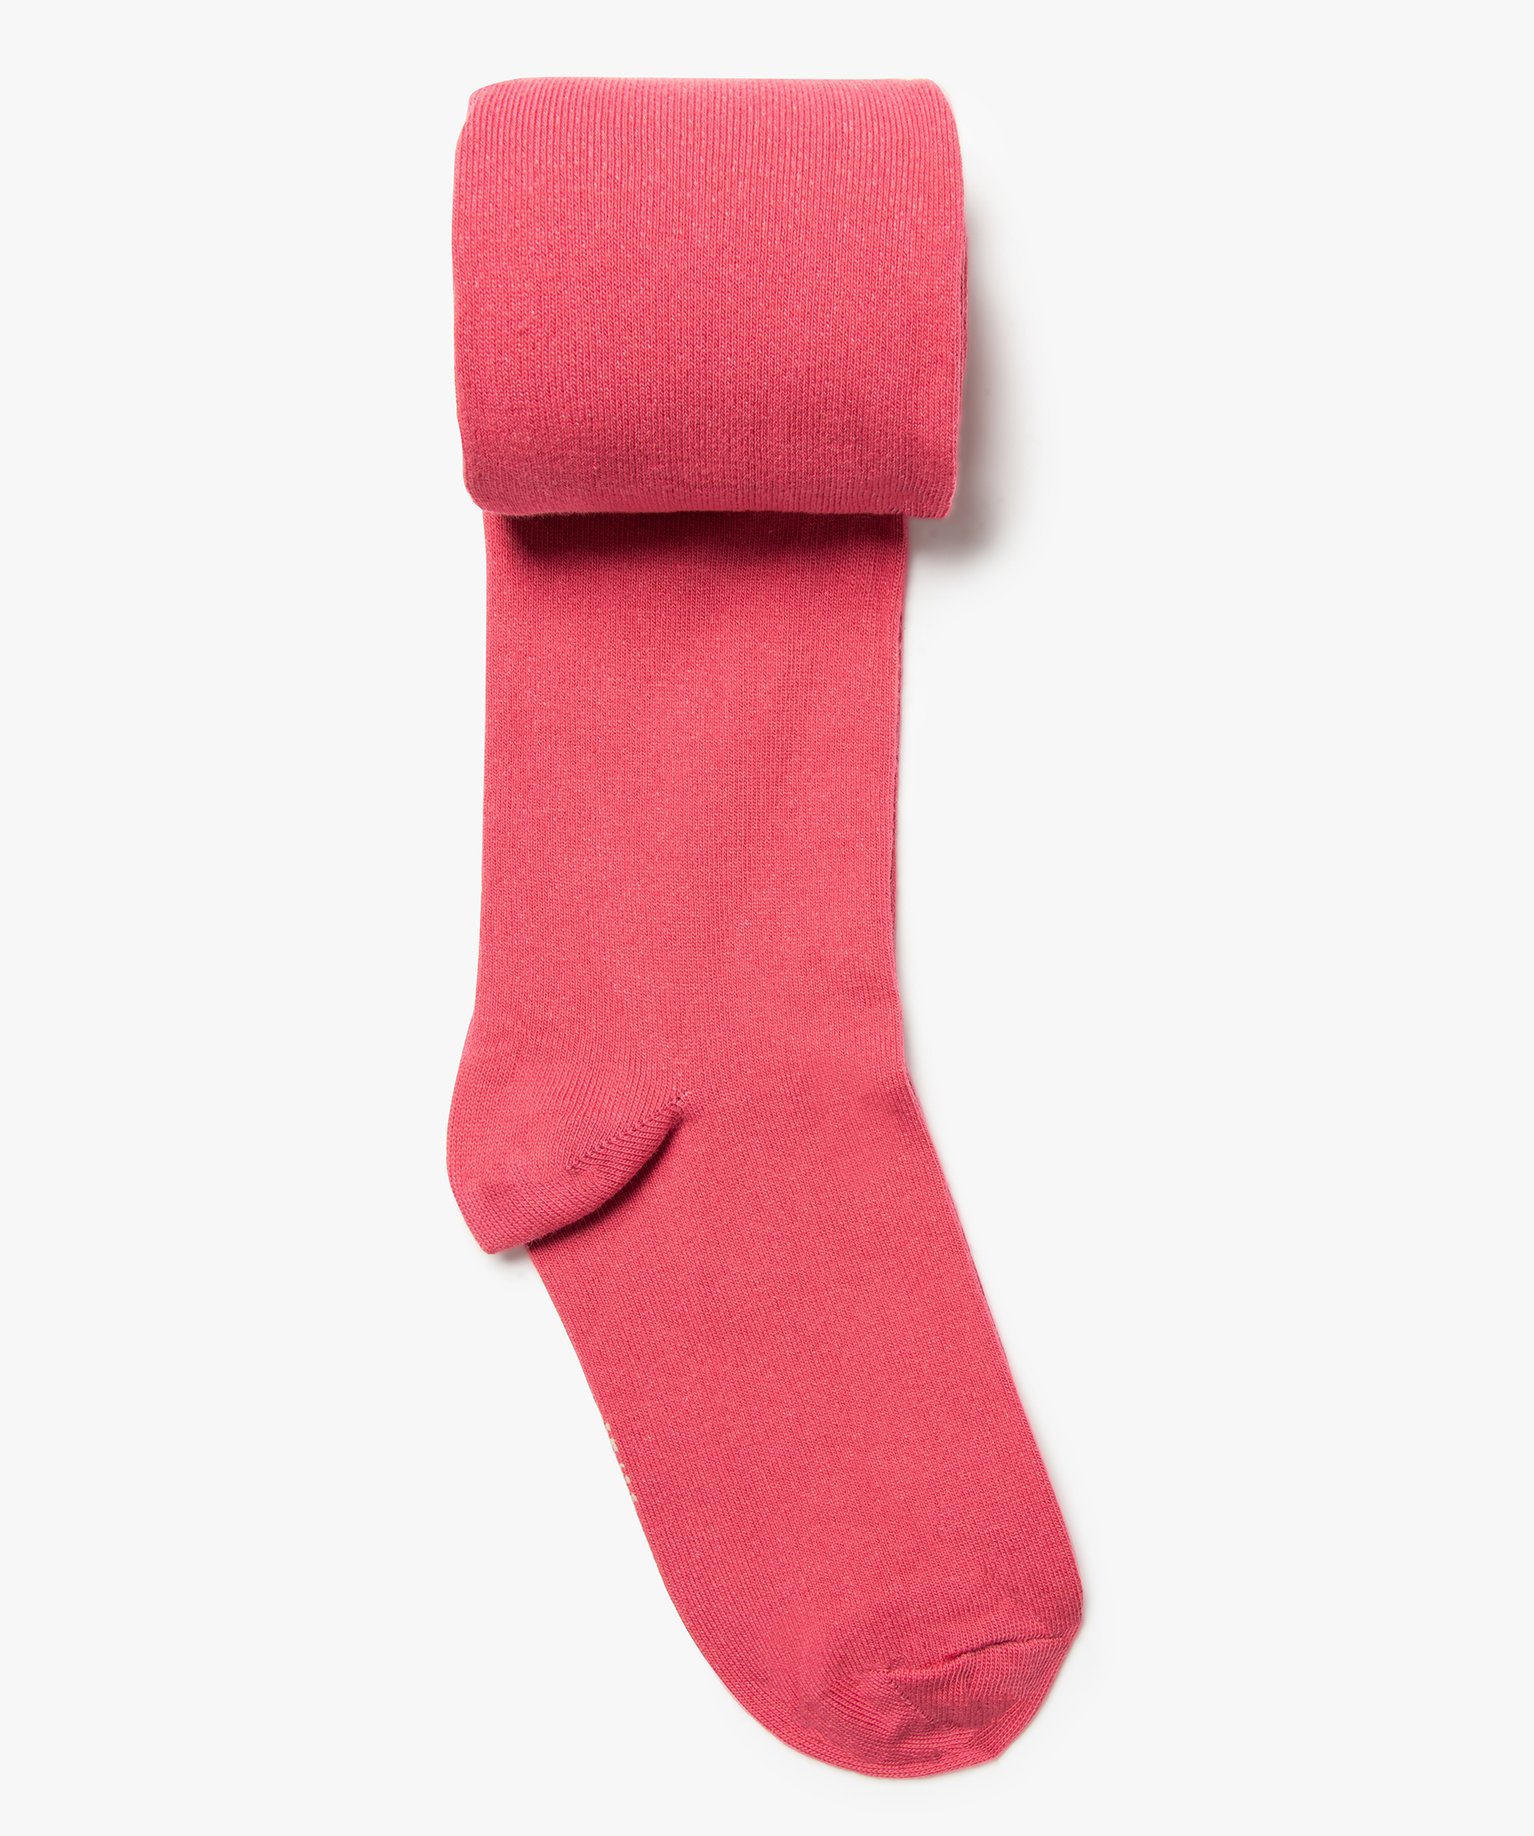 Collants chauds uni en coton fille - 24/26 - rose standard - GEMO